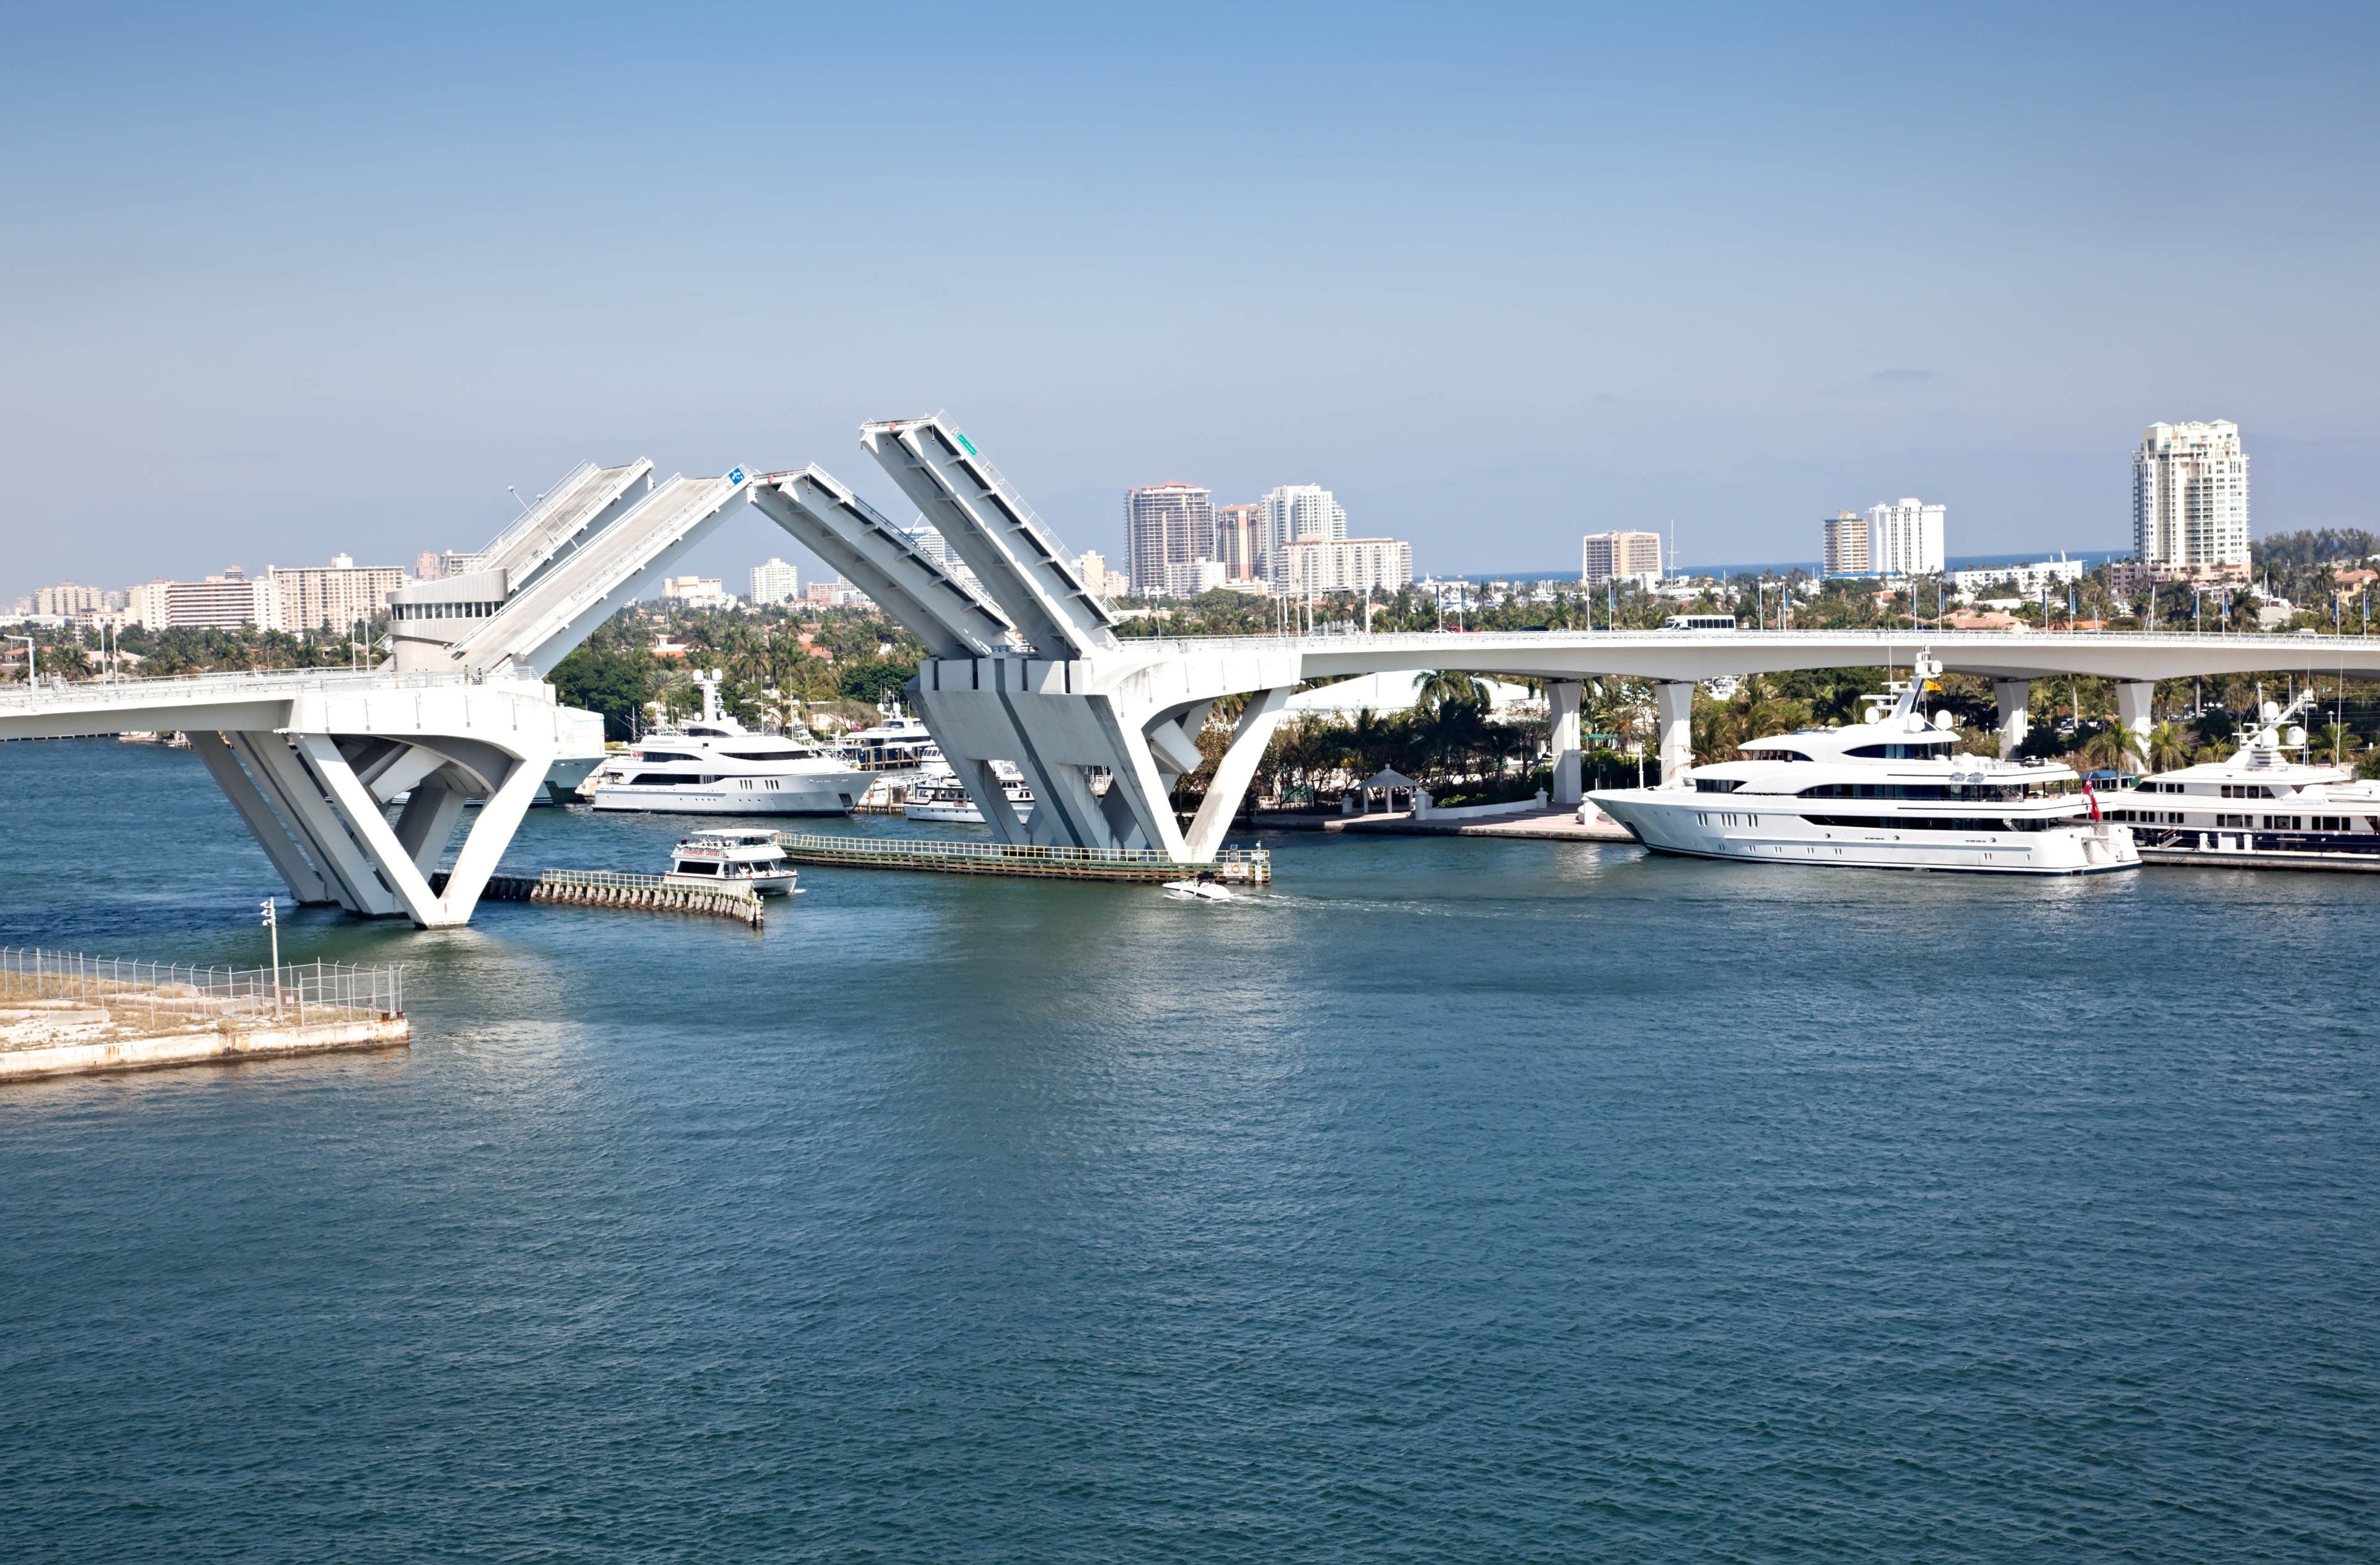 Profitez de votre détour par Port Everglades pour faire une balade au bord de l'eau à Dania Beach ou vous adonner aux promenades en bateau. Posez vos valises dans cette région et profitez de ses plages ou de ses restaurants. 